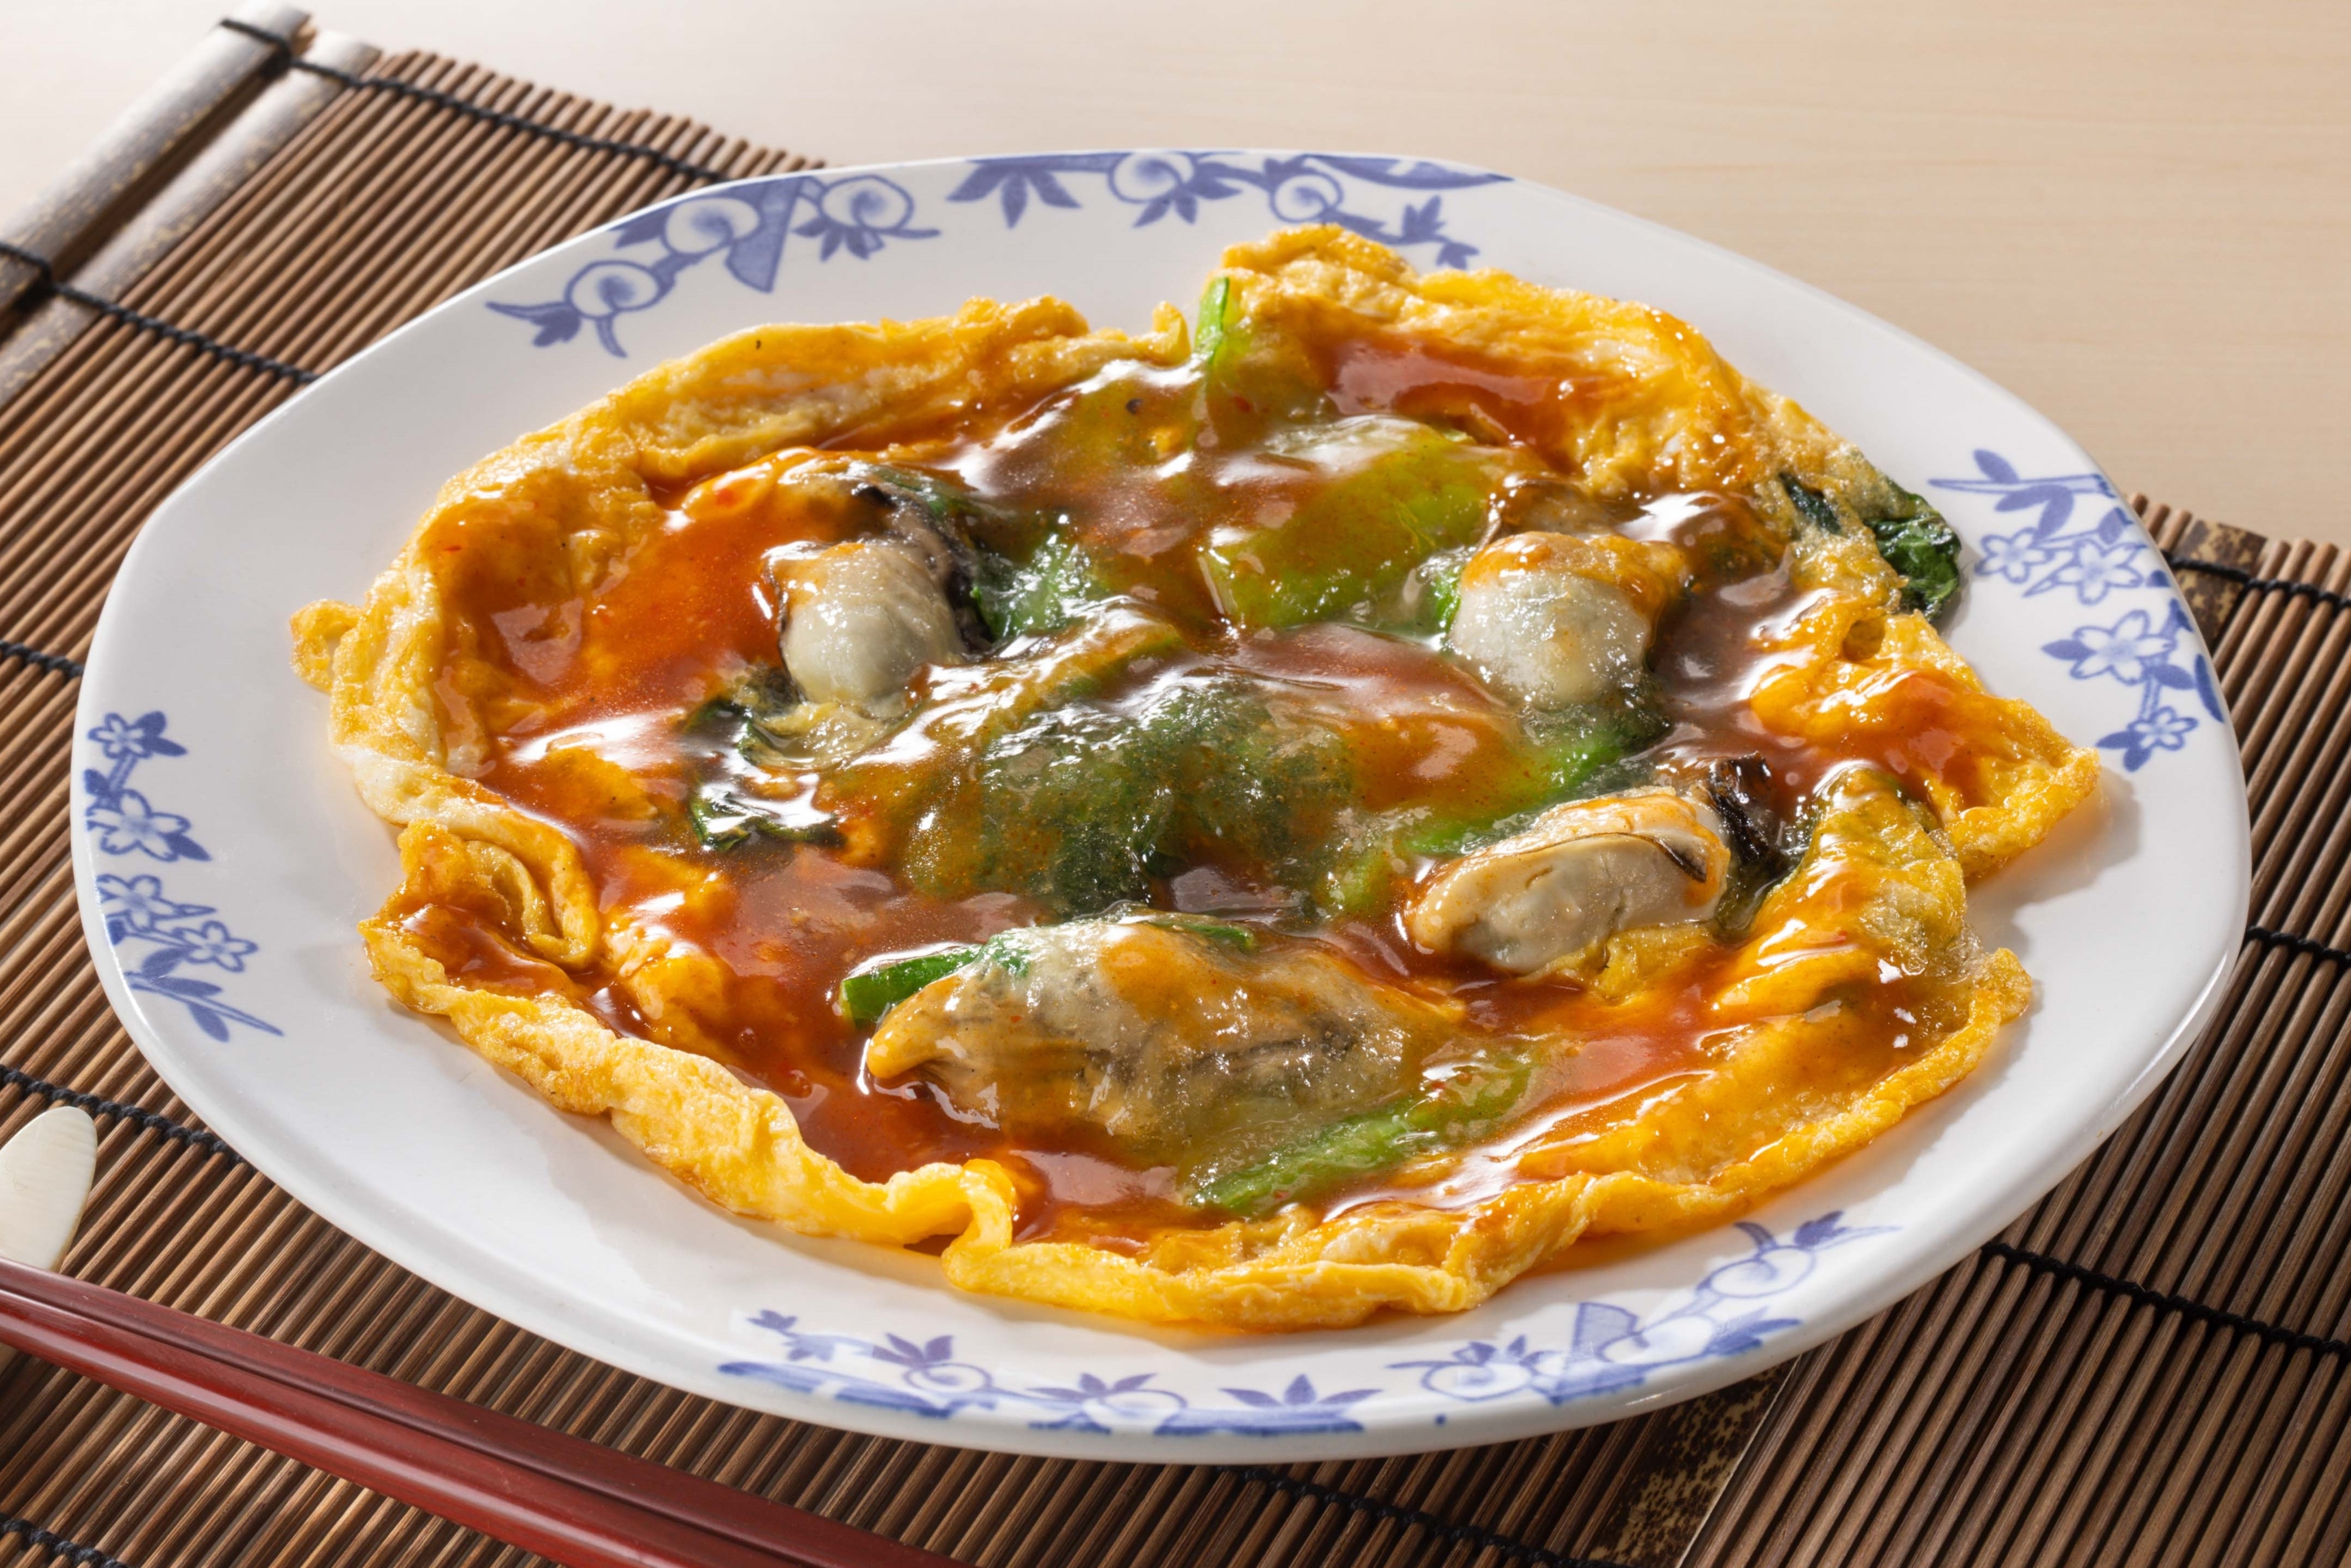 海鮮と野菜を使ったオムレツが皿に盛られている。